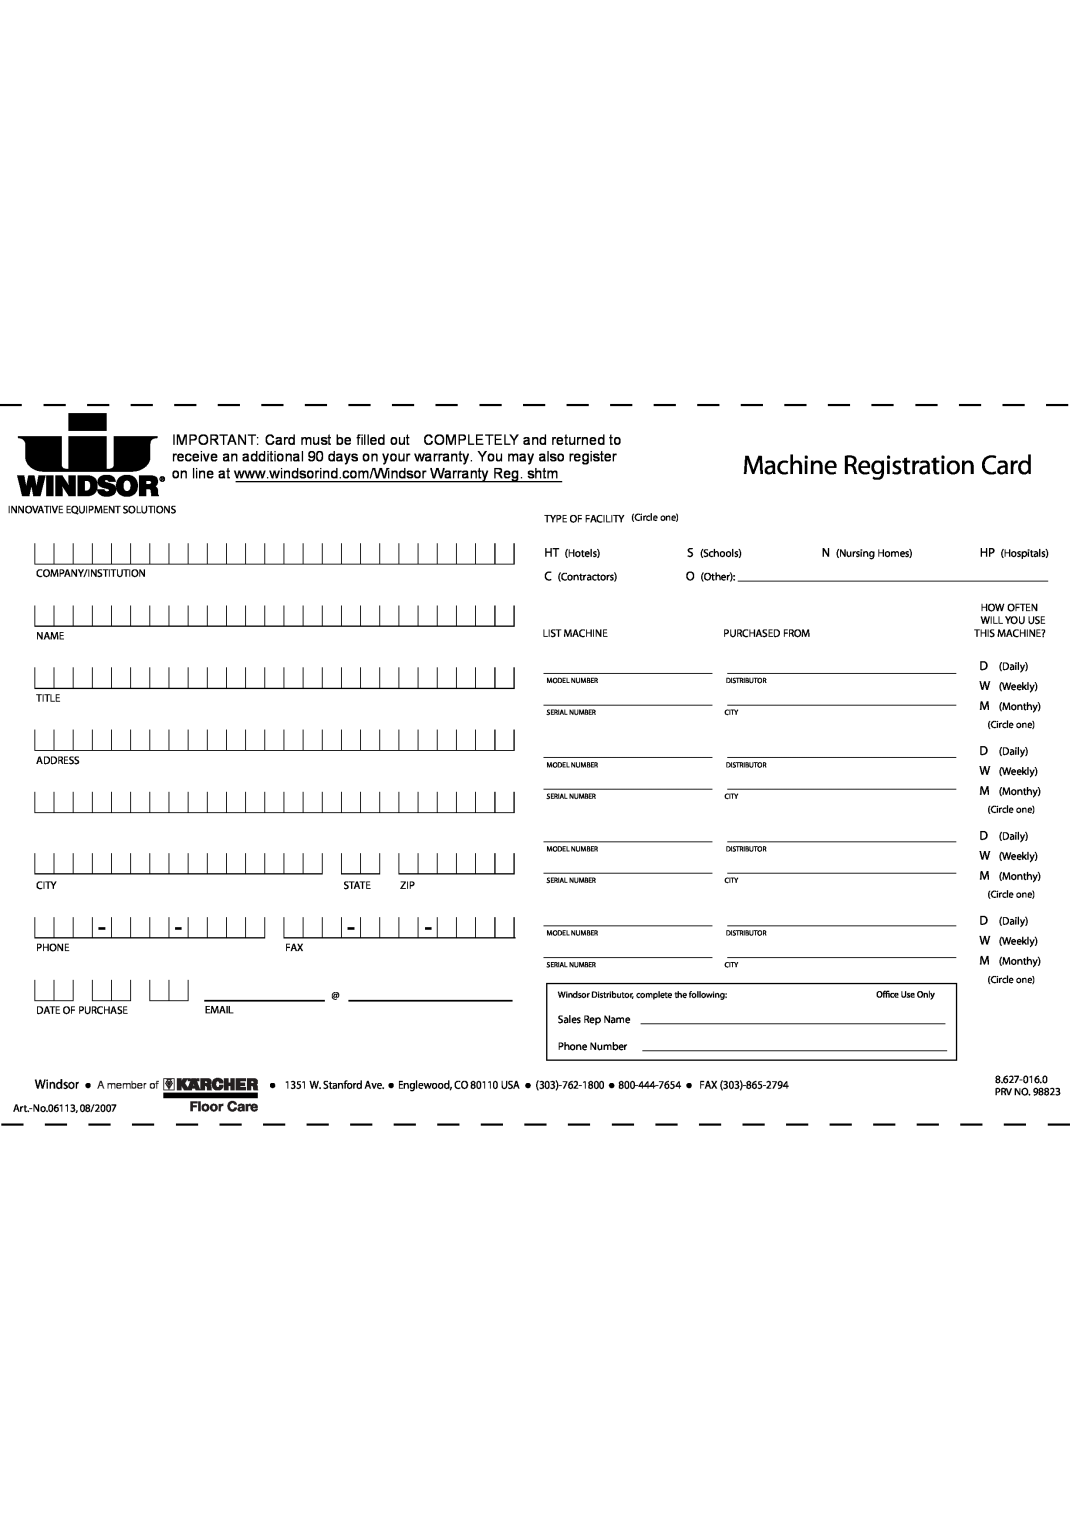 Windsor SRS12 manual Machine Registration Card, Windsor, A member of 